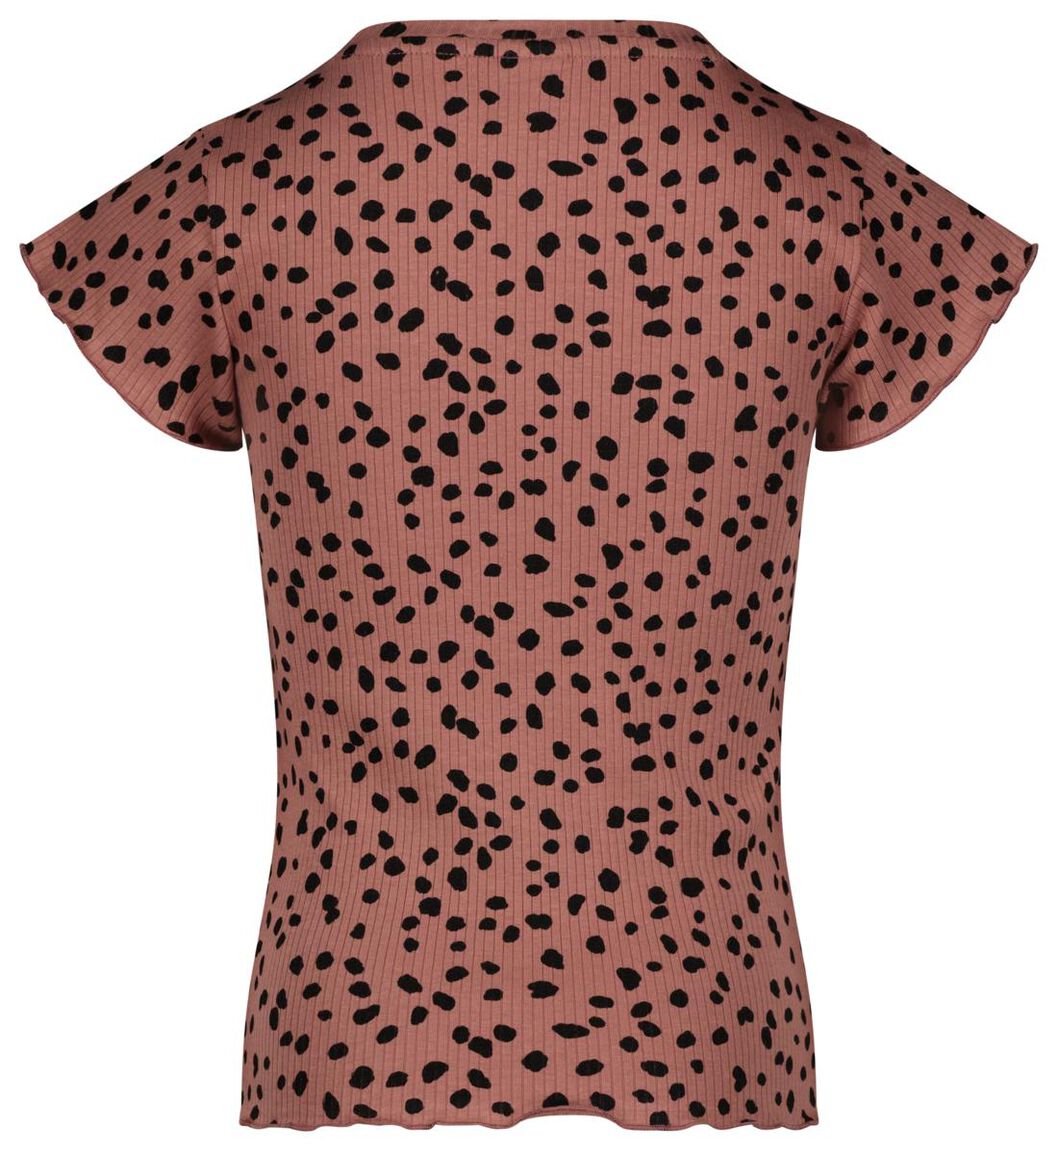 Kinder-T-Shirt, gerippt rosa - 1000027651 - HEMA